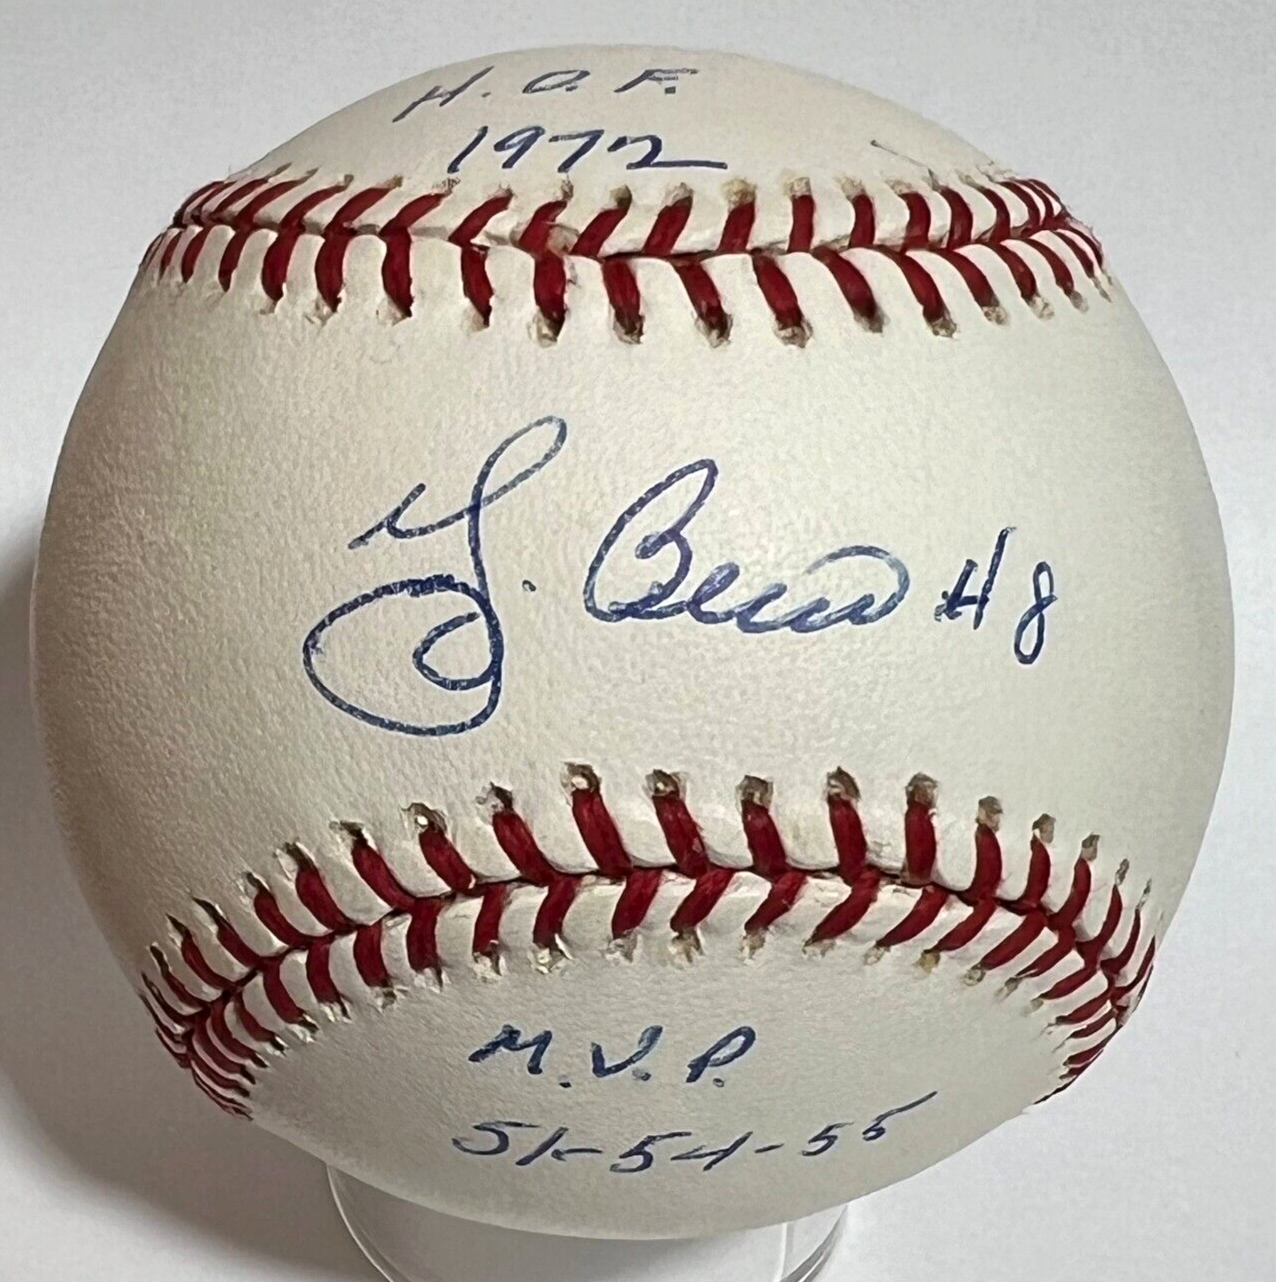 Yogi Berra Signed Baseball with HOF 1972 MVP 